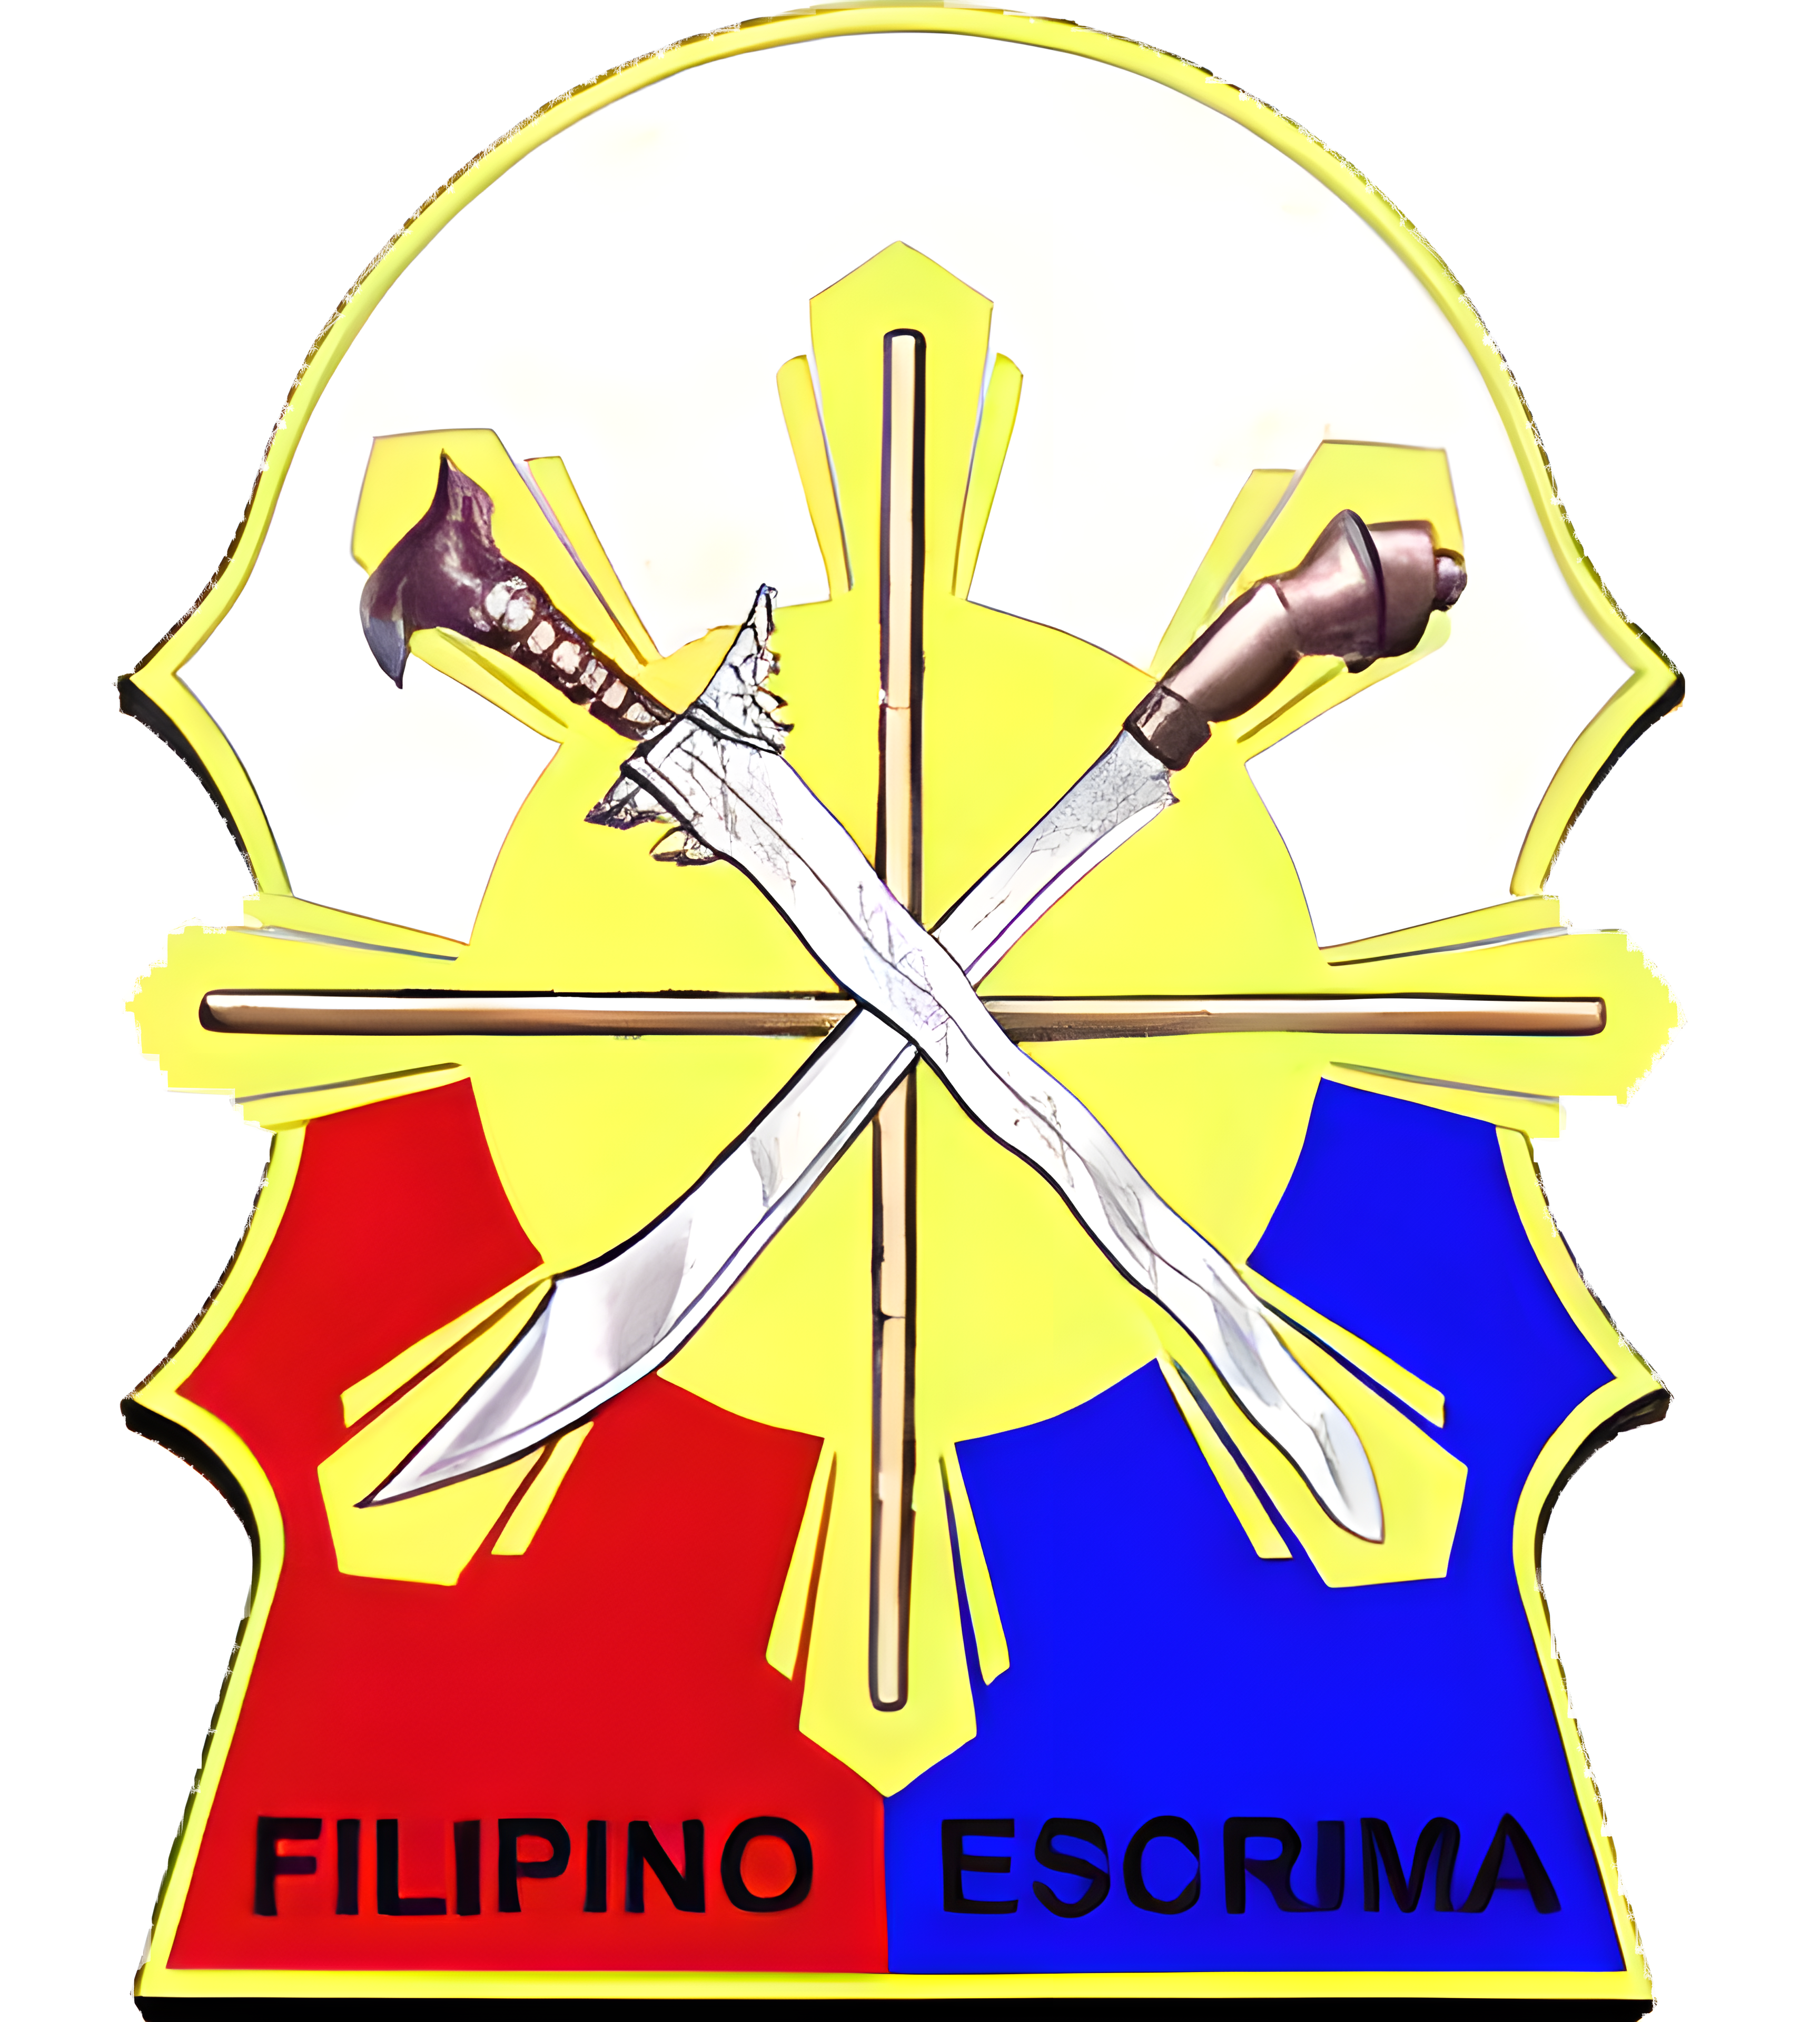 The escrima symbolic shield for Advincula Combat Escrima.